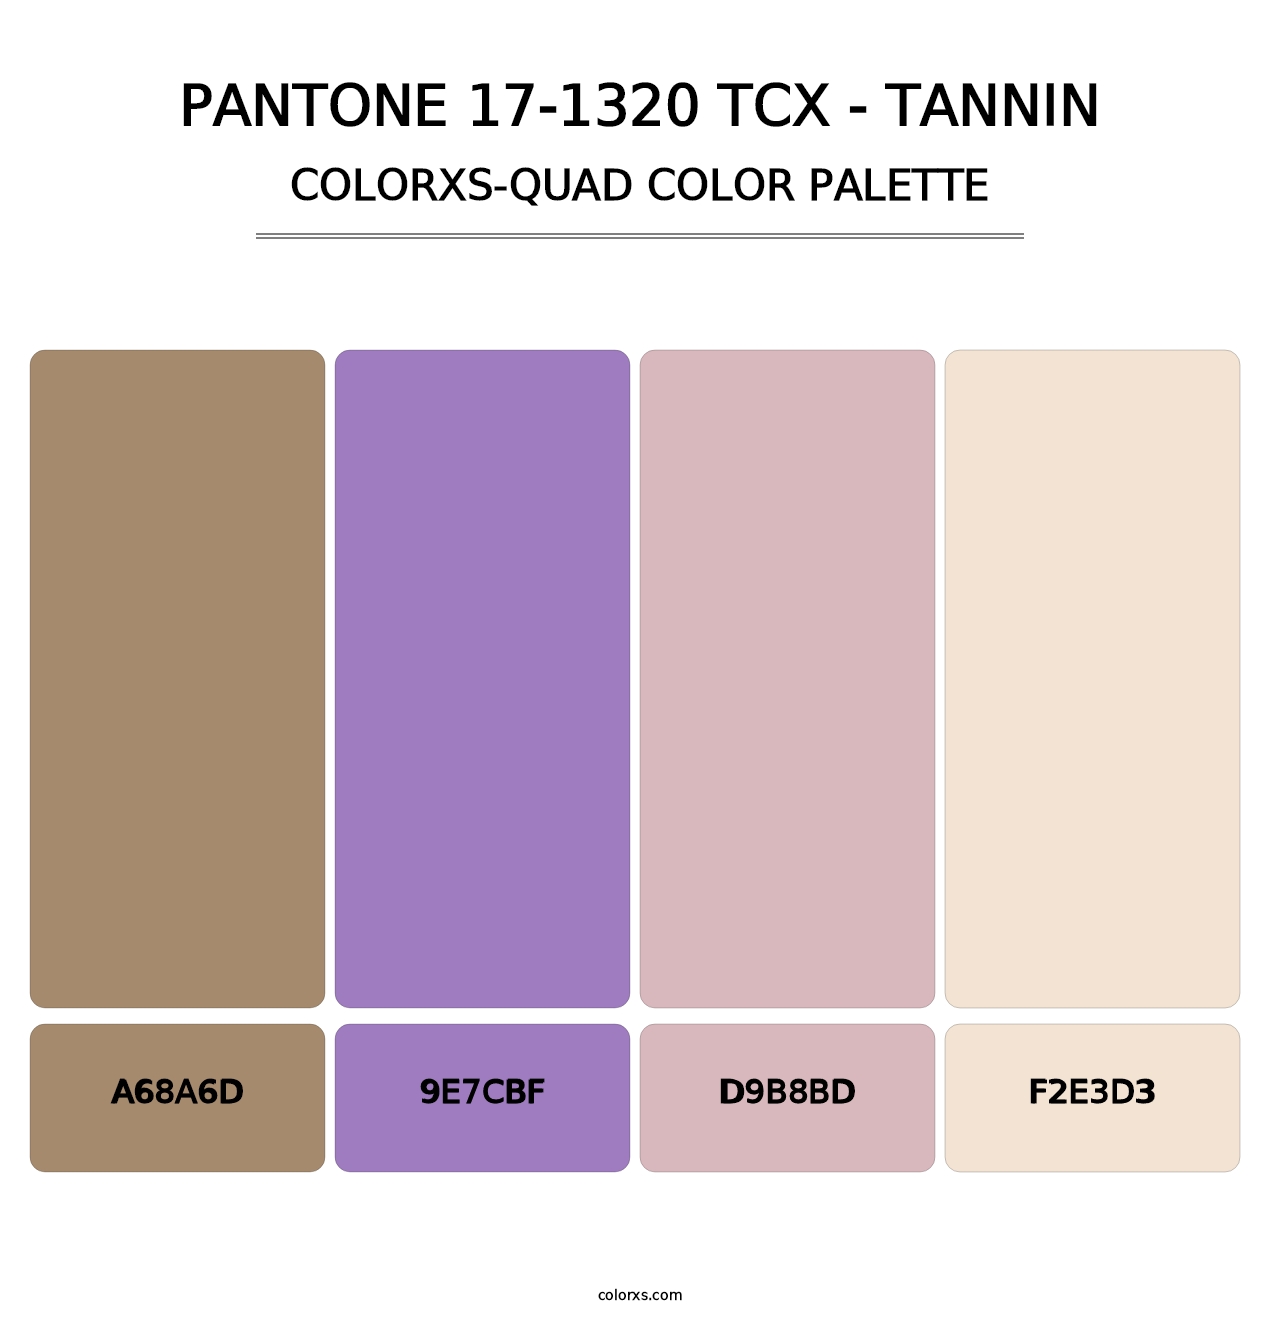 PANTONE 17-1320 TCX - Tannin - Colorxs Quad Palette